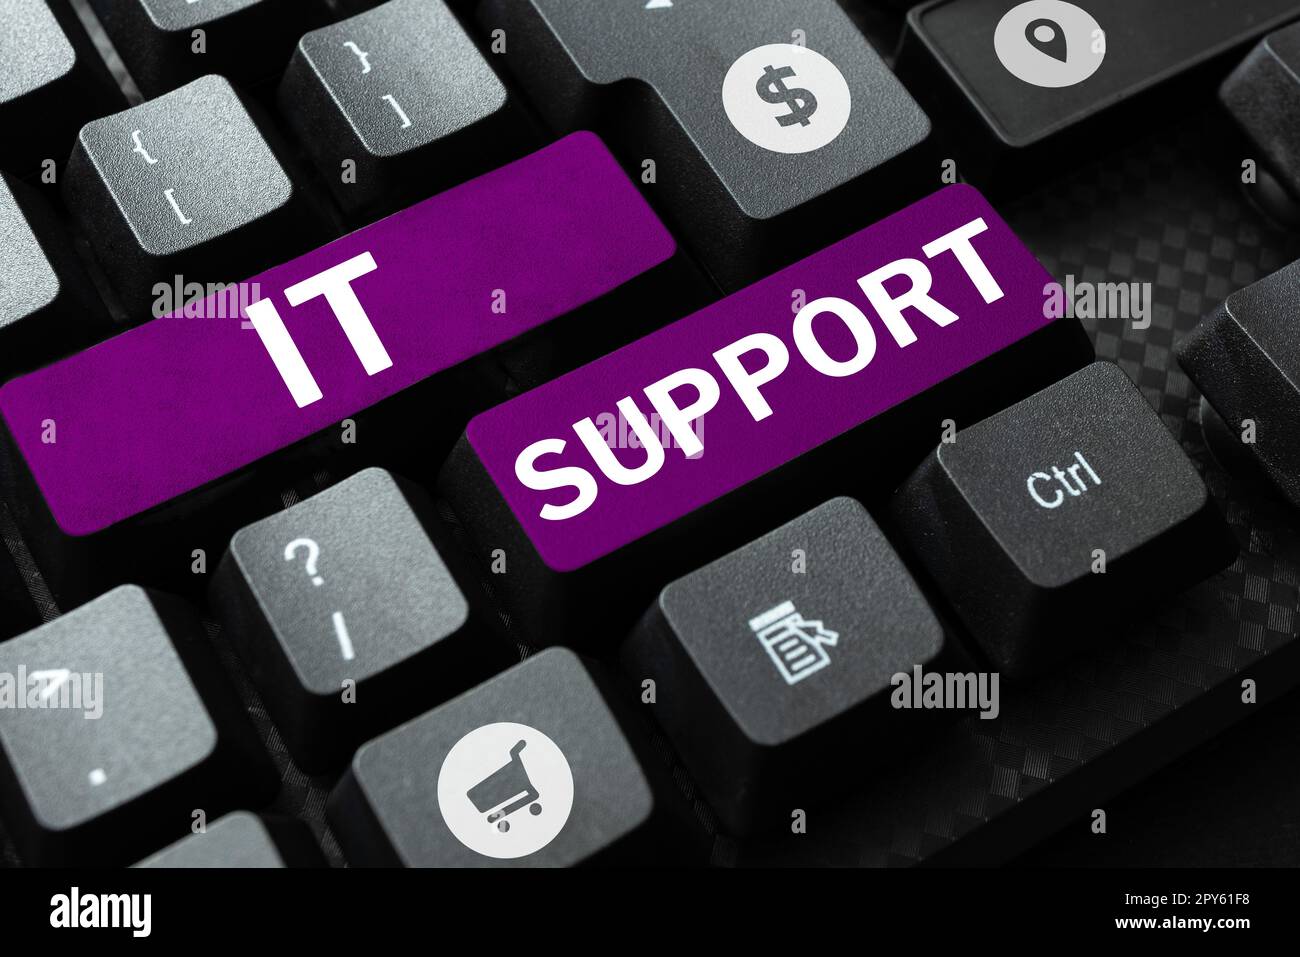 Textunterschrift für IT-Support. Das Leihen von Geschäftsideen hilft bei Informationstechnologien und verwandten Themen Stockfoto